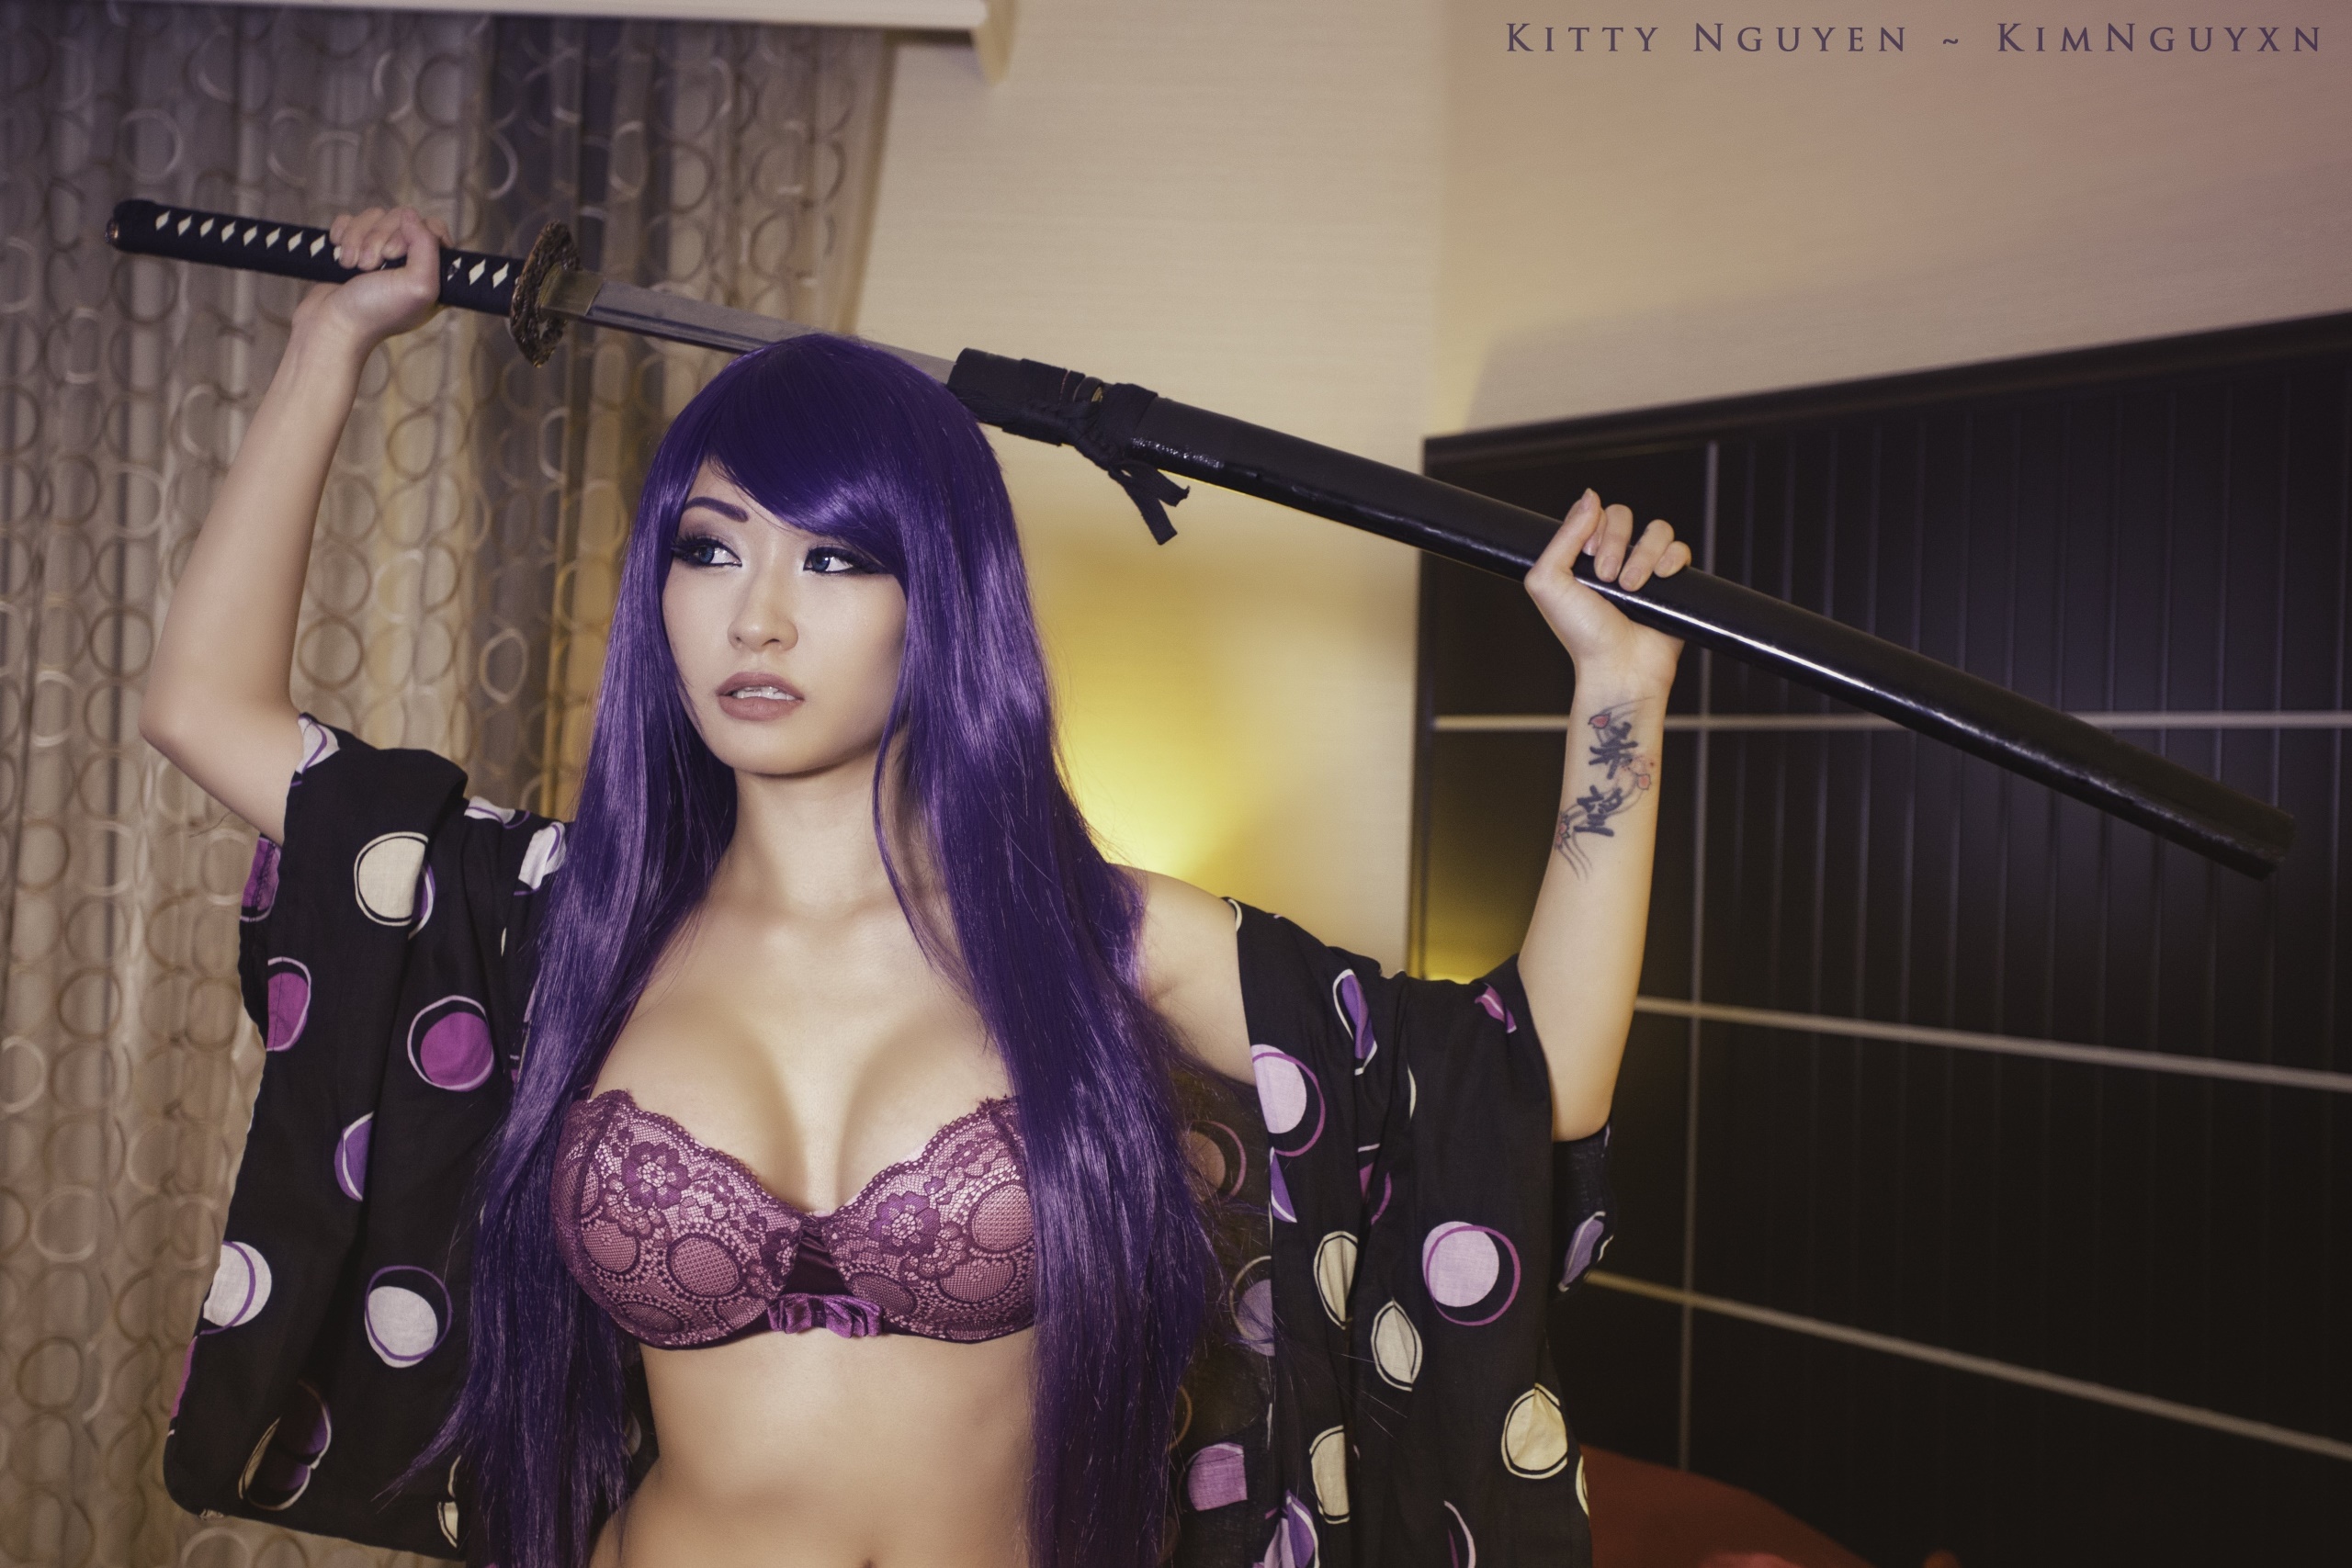 People 2560x1707 boobs purple hair bra Asian women model katana Kitty Nguyen